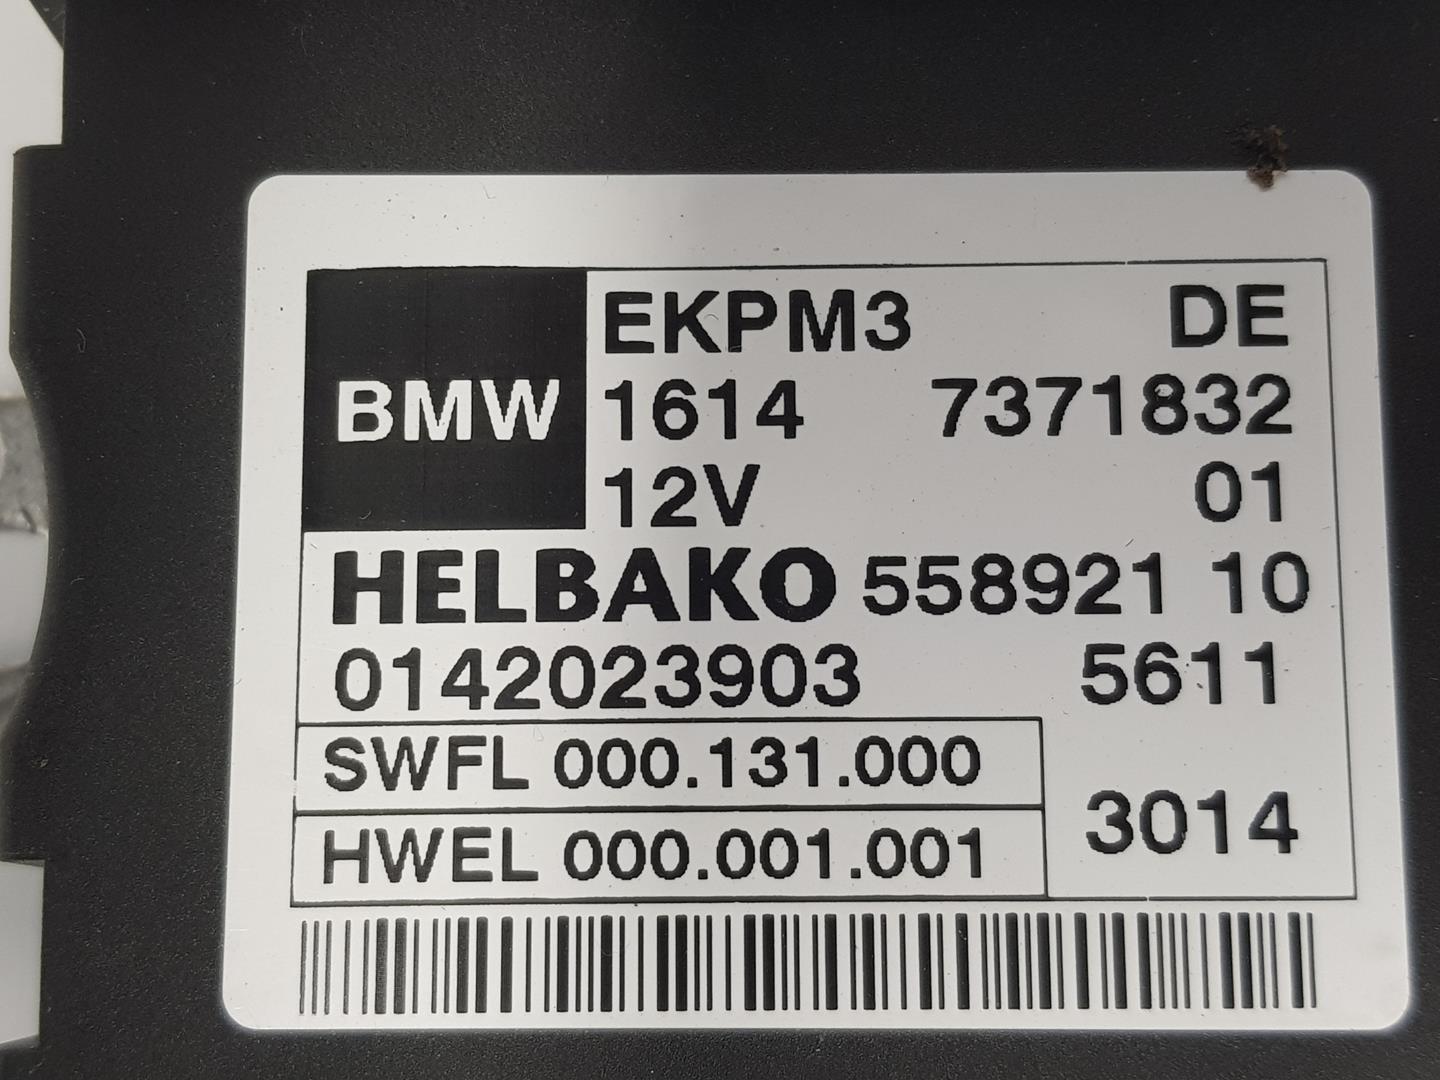 BMW 4 Series F32/F33/F36 (2013-2020) Fuel Pump Control Unit 16147371832, 7371832 24124561